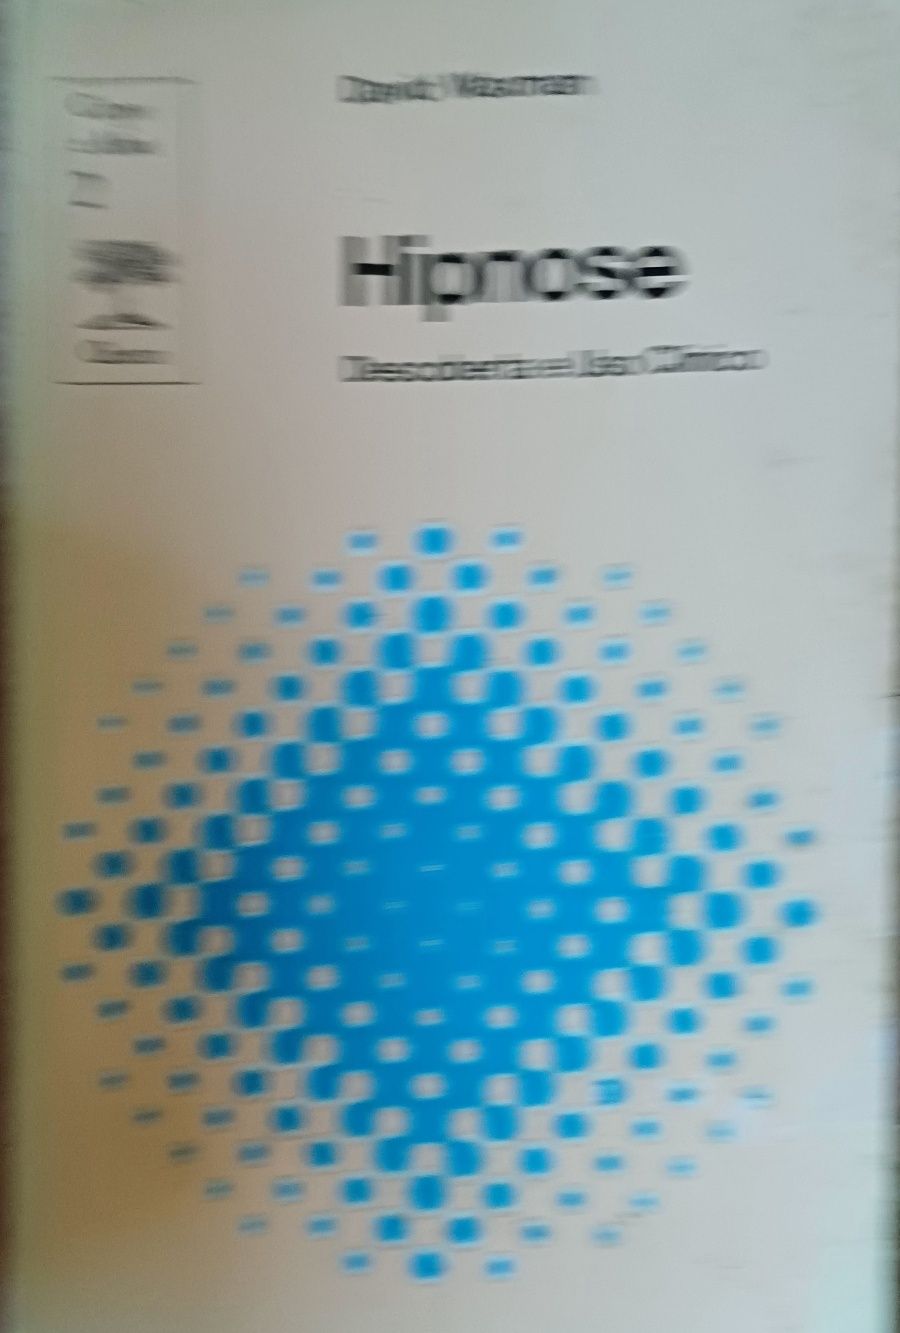 Hipnotismo e Hipnose 2 Livros